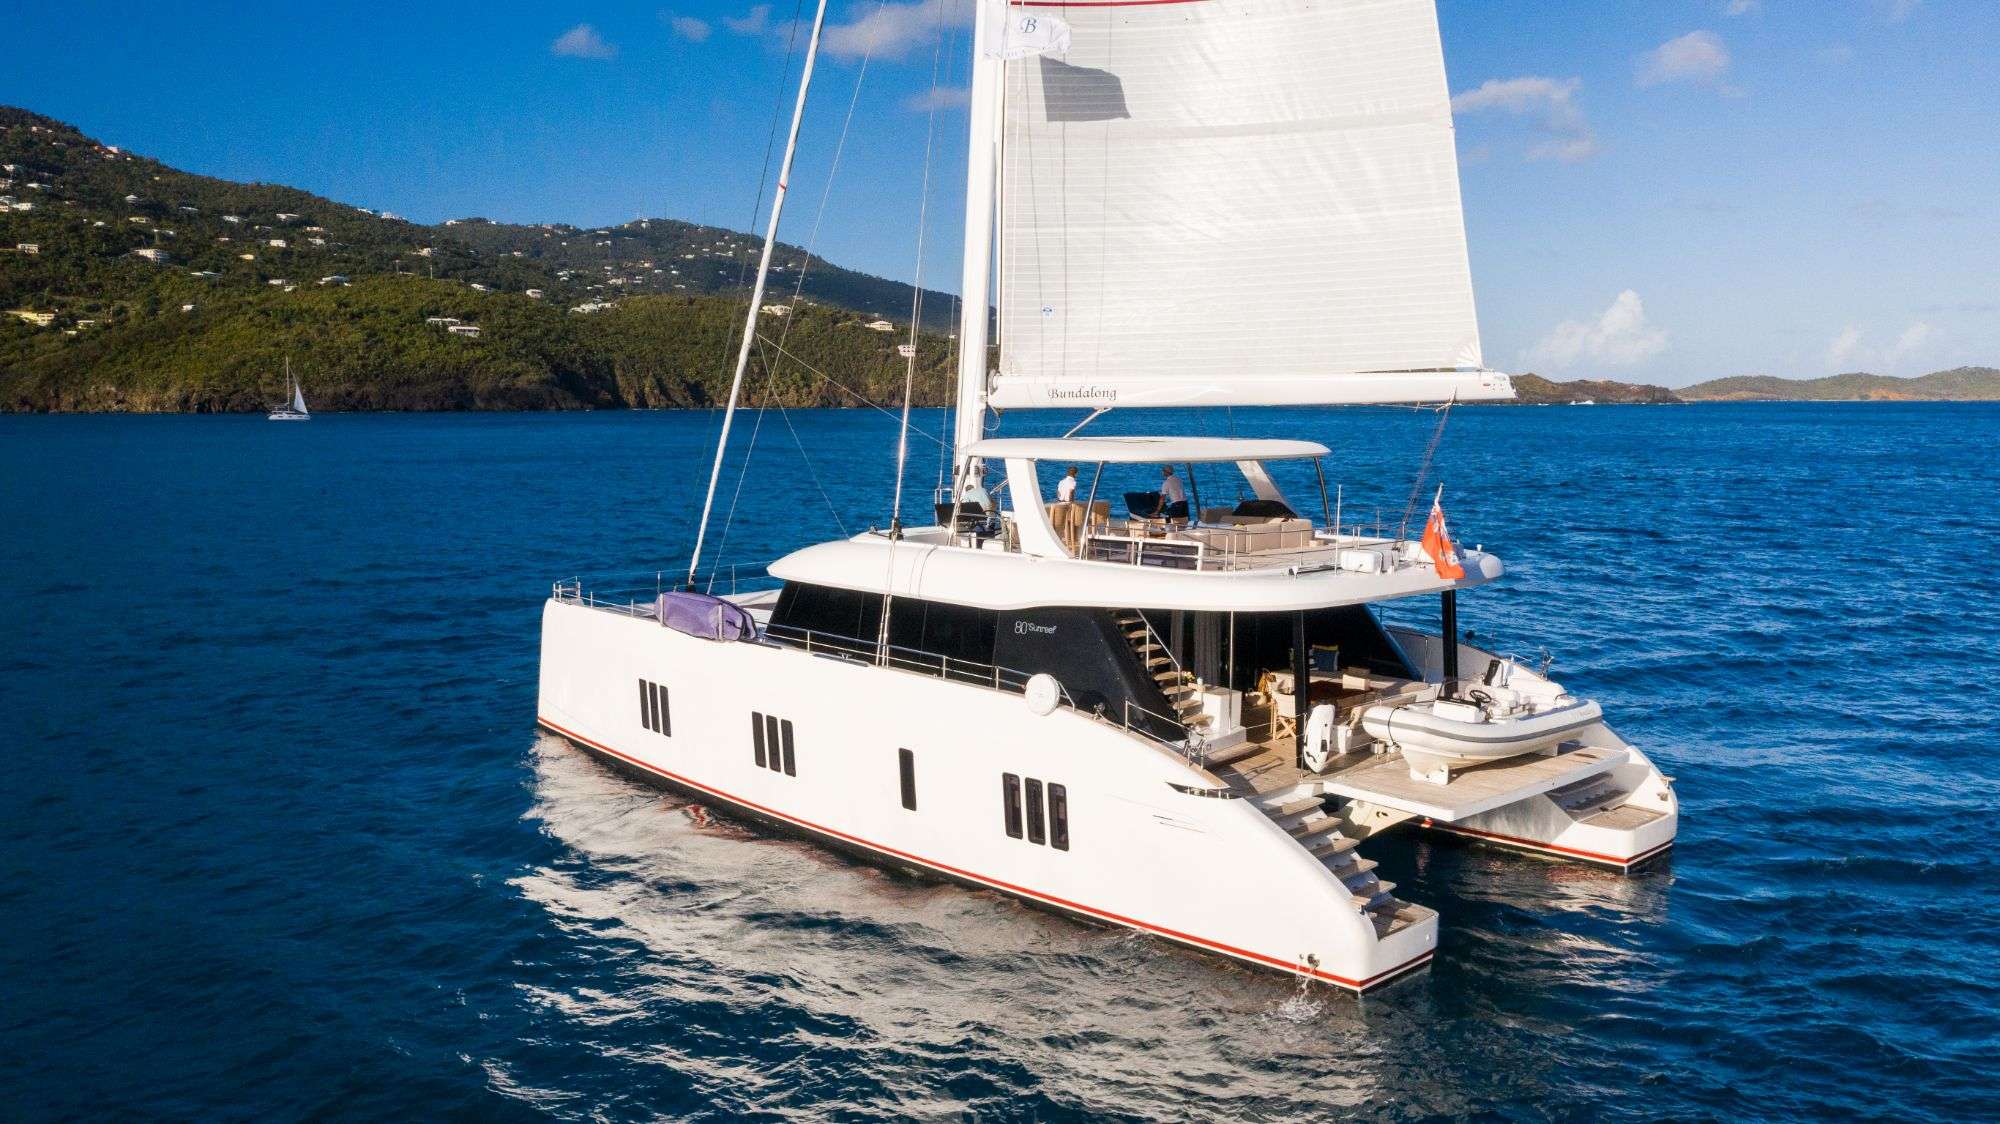 BUNDALONG Yacht Charter - Side profile